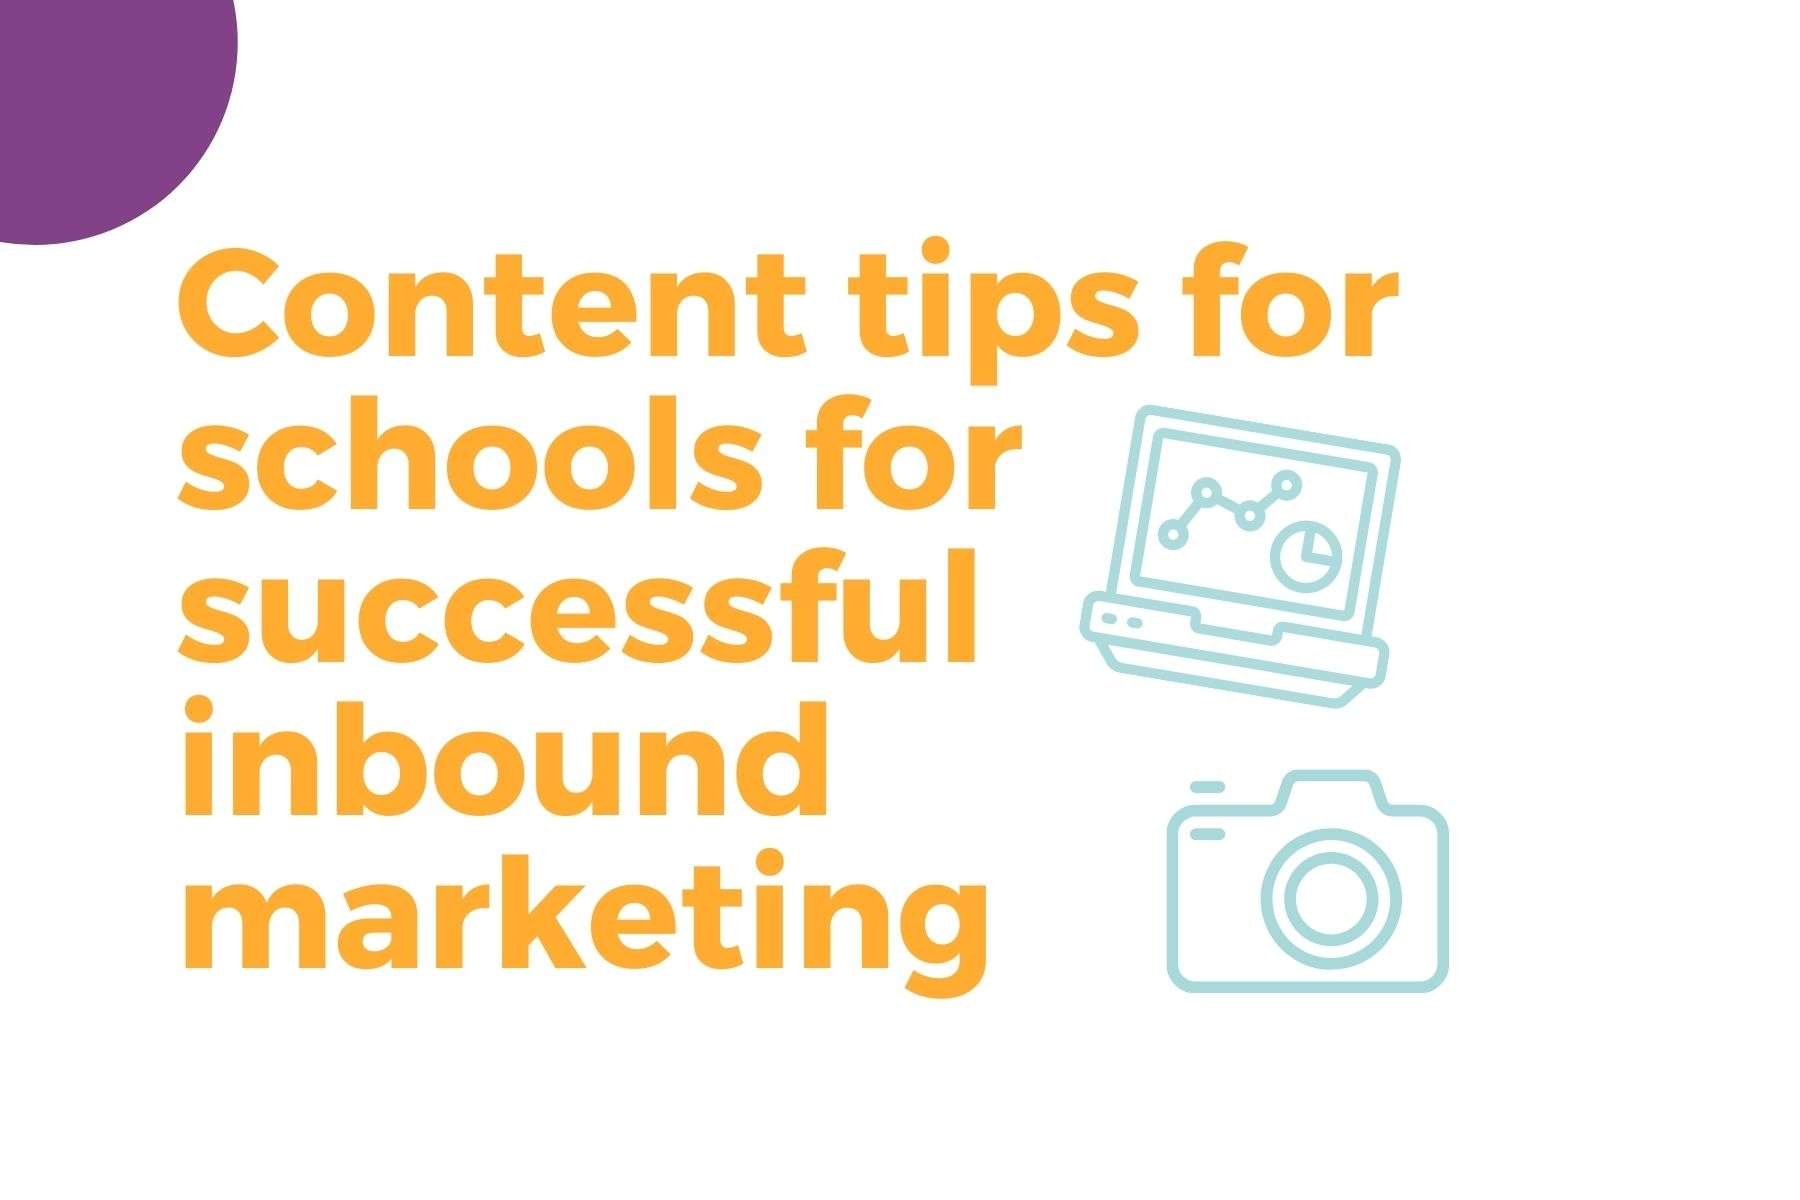 School marketing inbound tips 